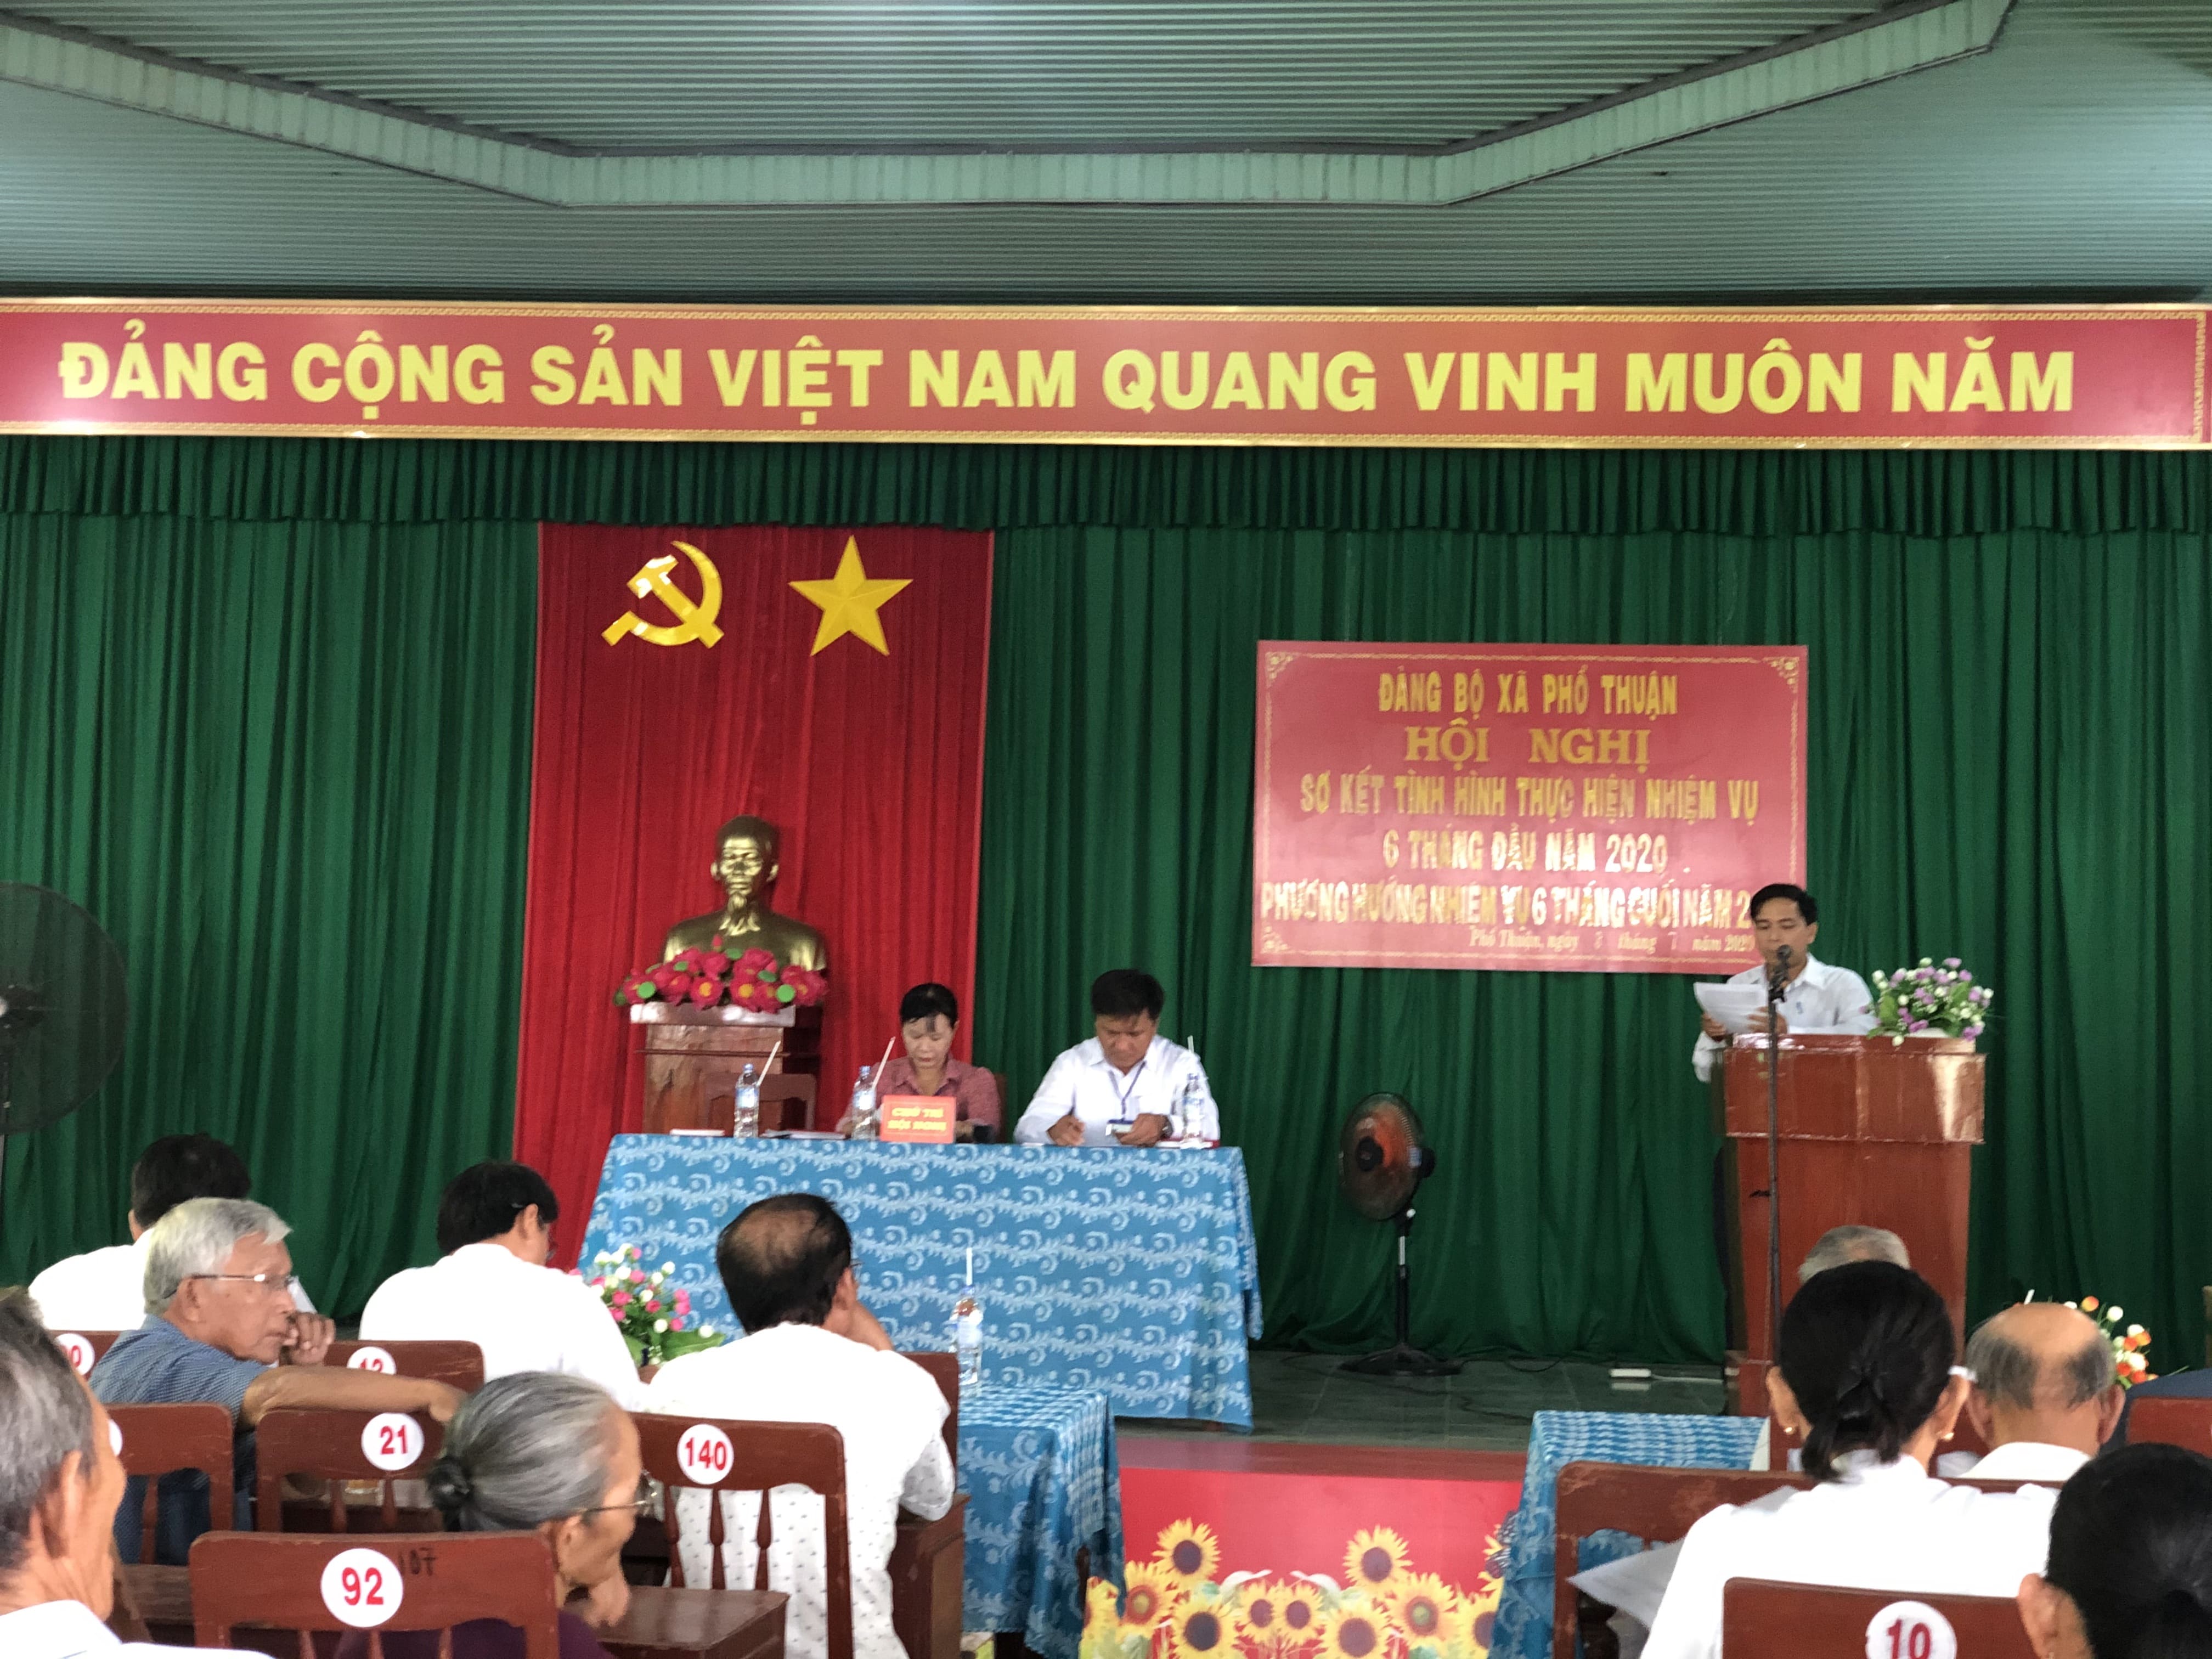 Đảng ủy xã Phổ Thuận tổ chức Hội nghị sơ kết công tác 6 tháng đầu năm 2020